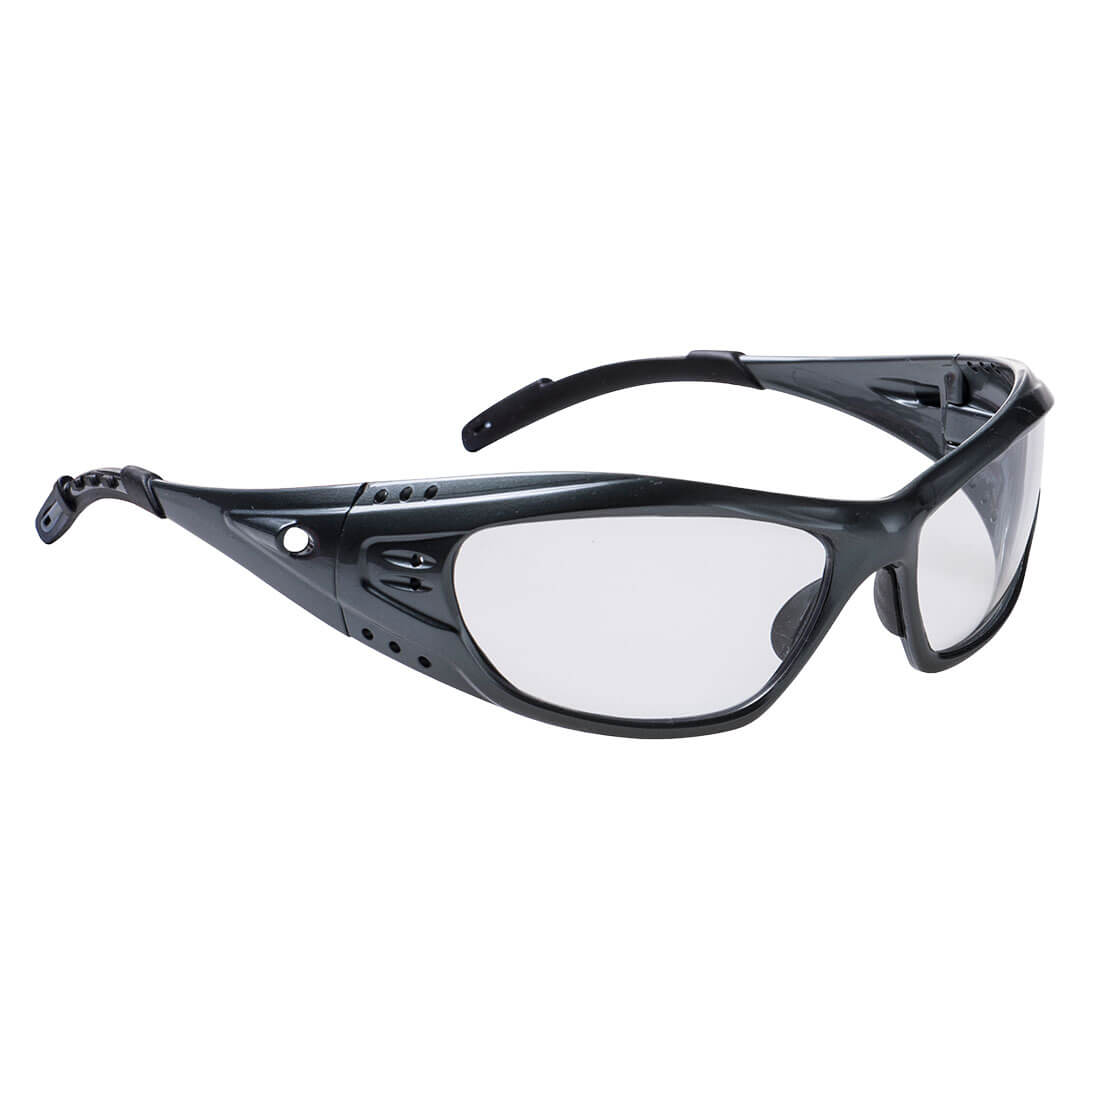 PS06 - Paris Sport Safety Glasses Black